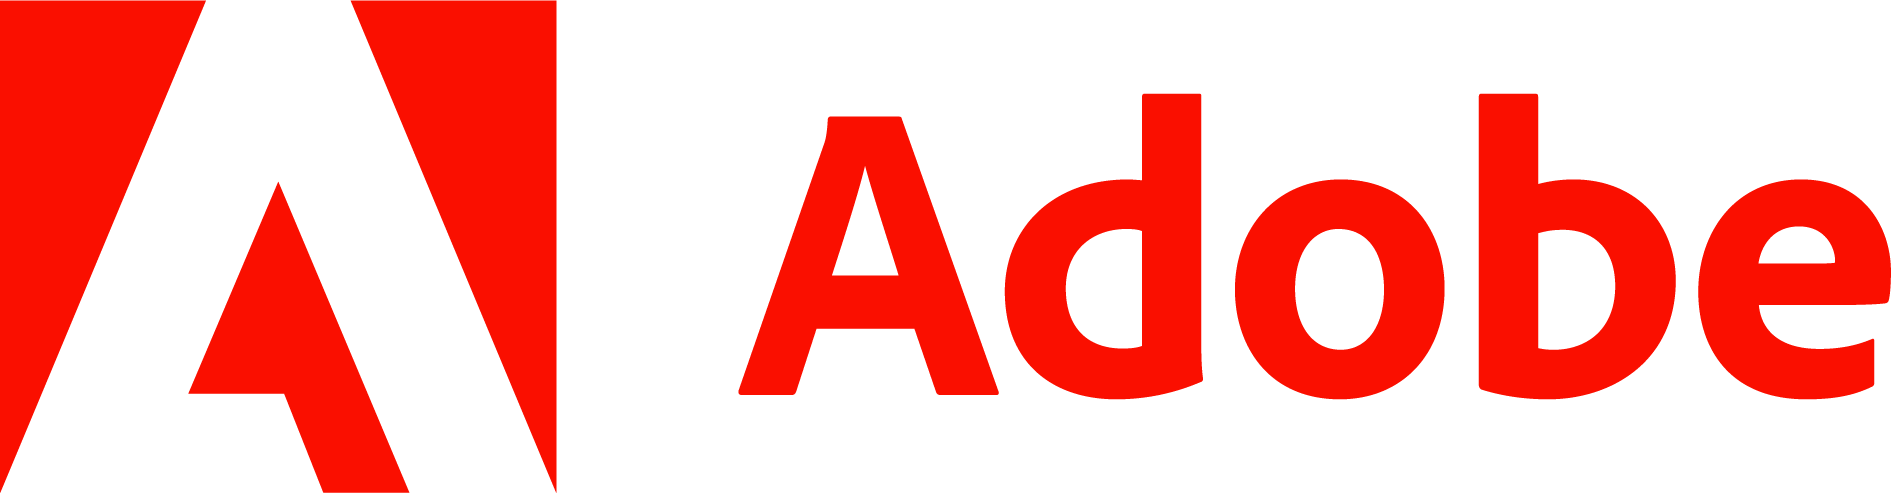 Adobe Logo PNG Image